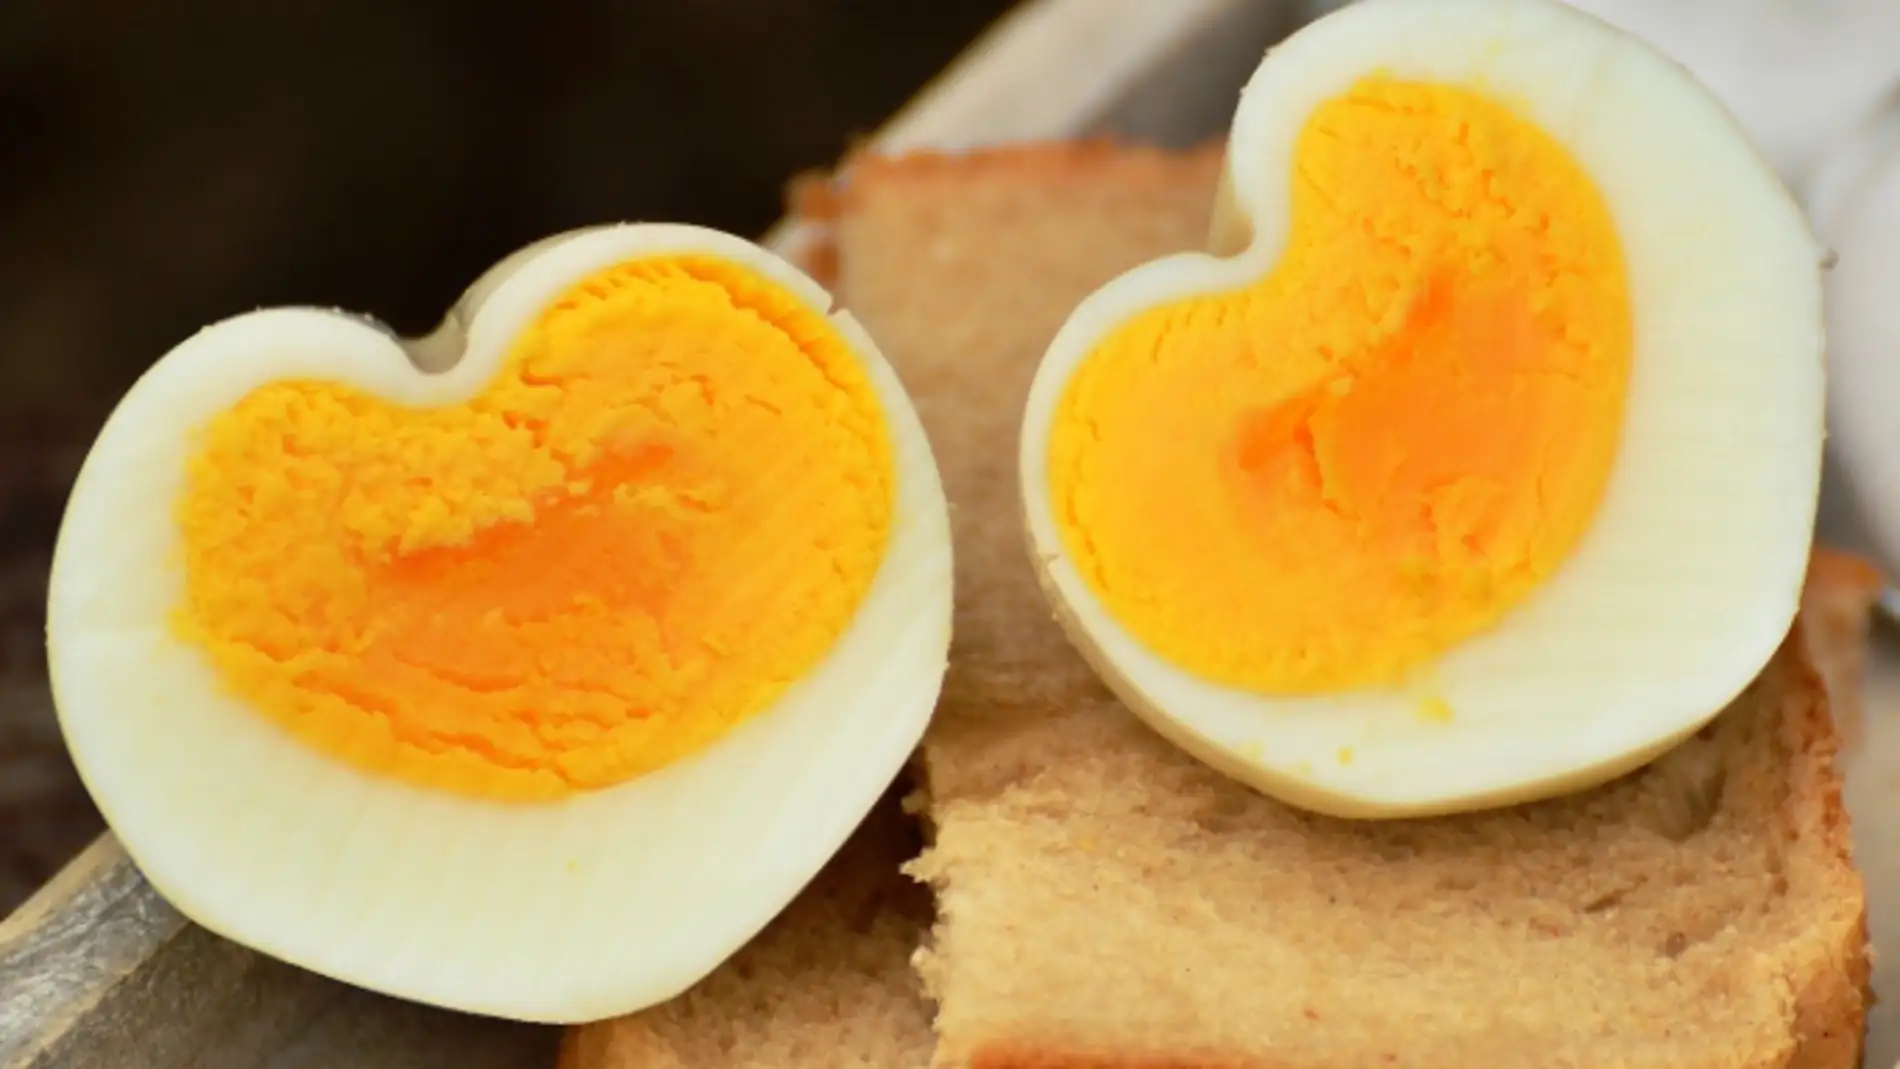 Dieta del huevo duro: Menú, mitos y todo lo que necesitas saber 